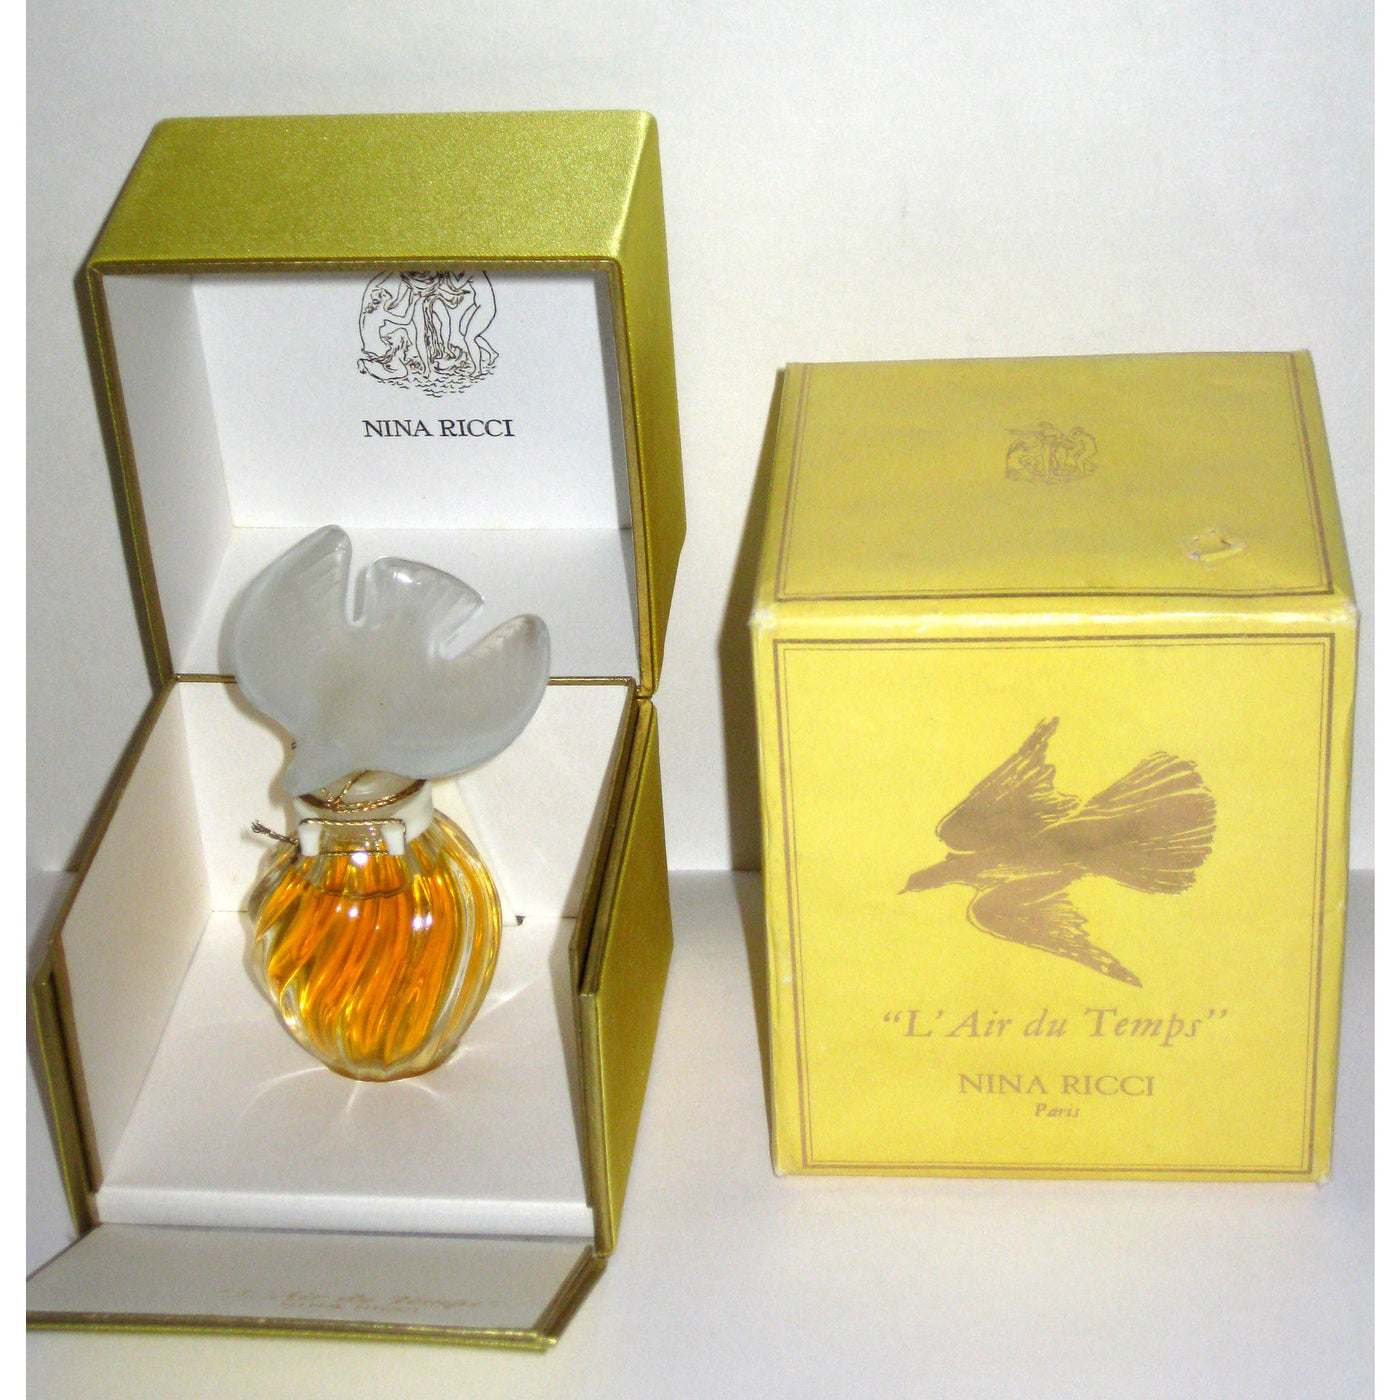  VintageNina Ricci L'Air du Temps Parfum Single Dove Lalique Flacon